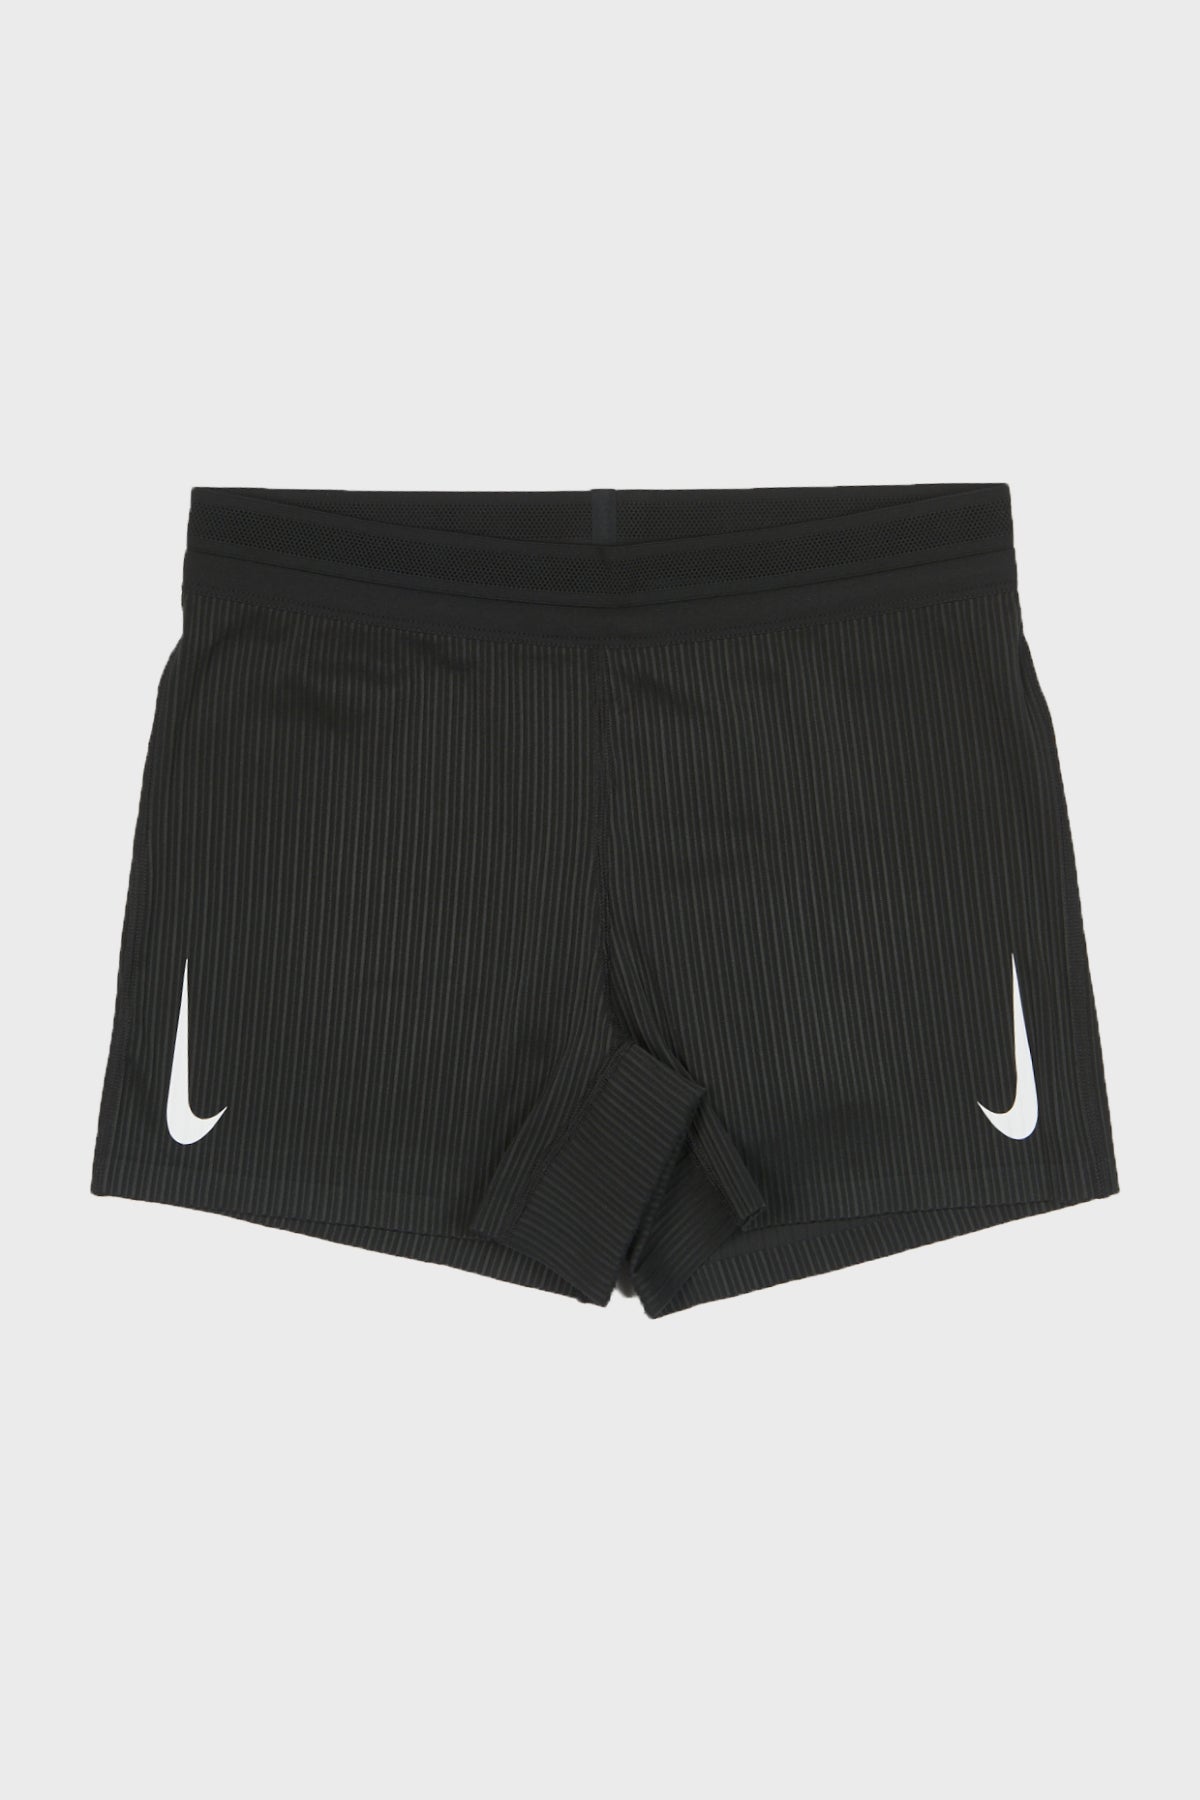 NIKE - W Nike AeroSwift Shorts